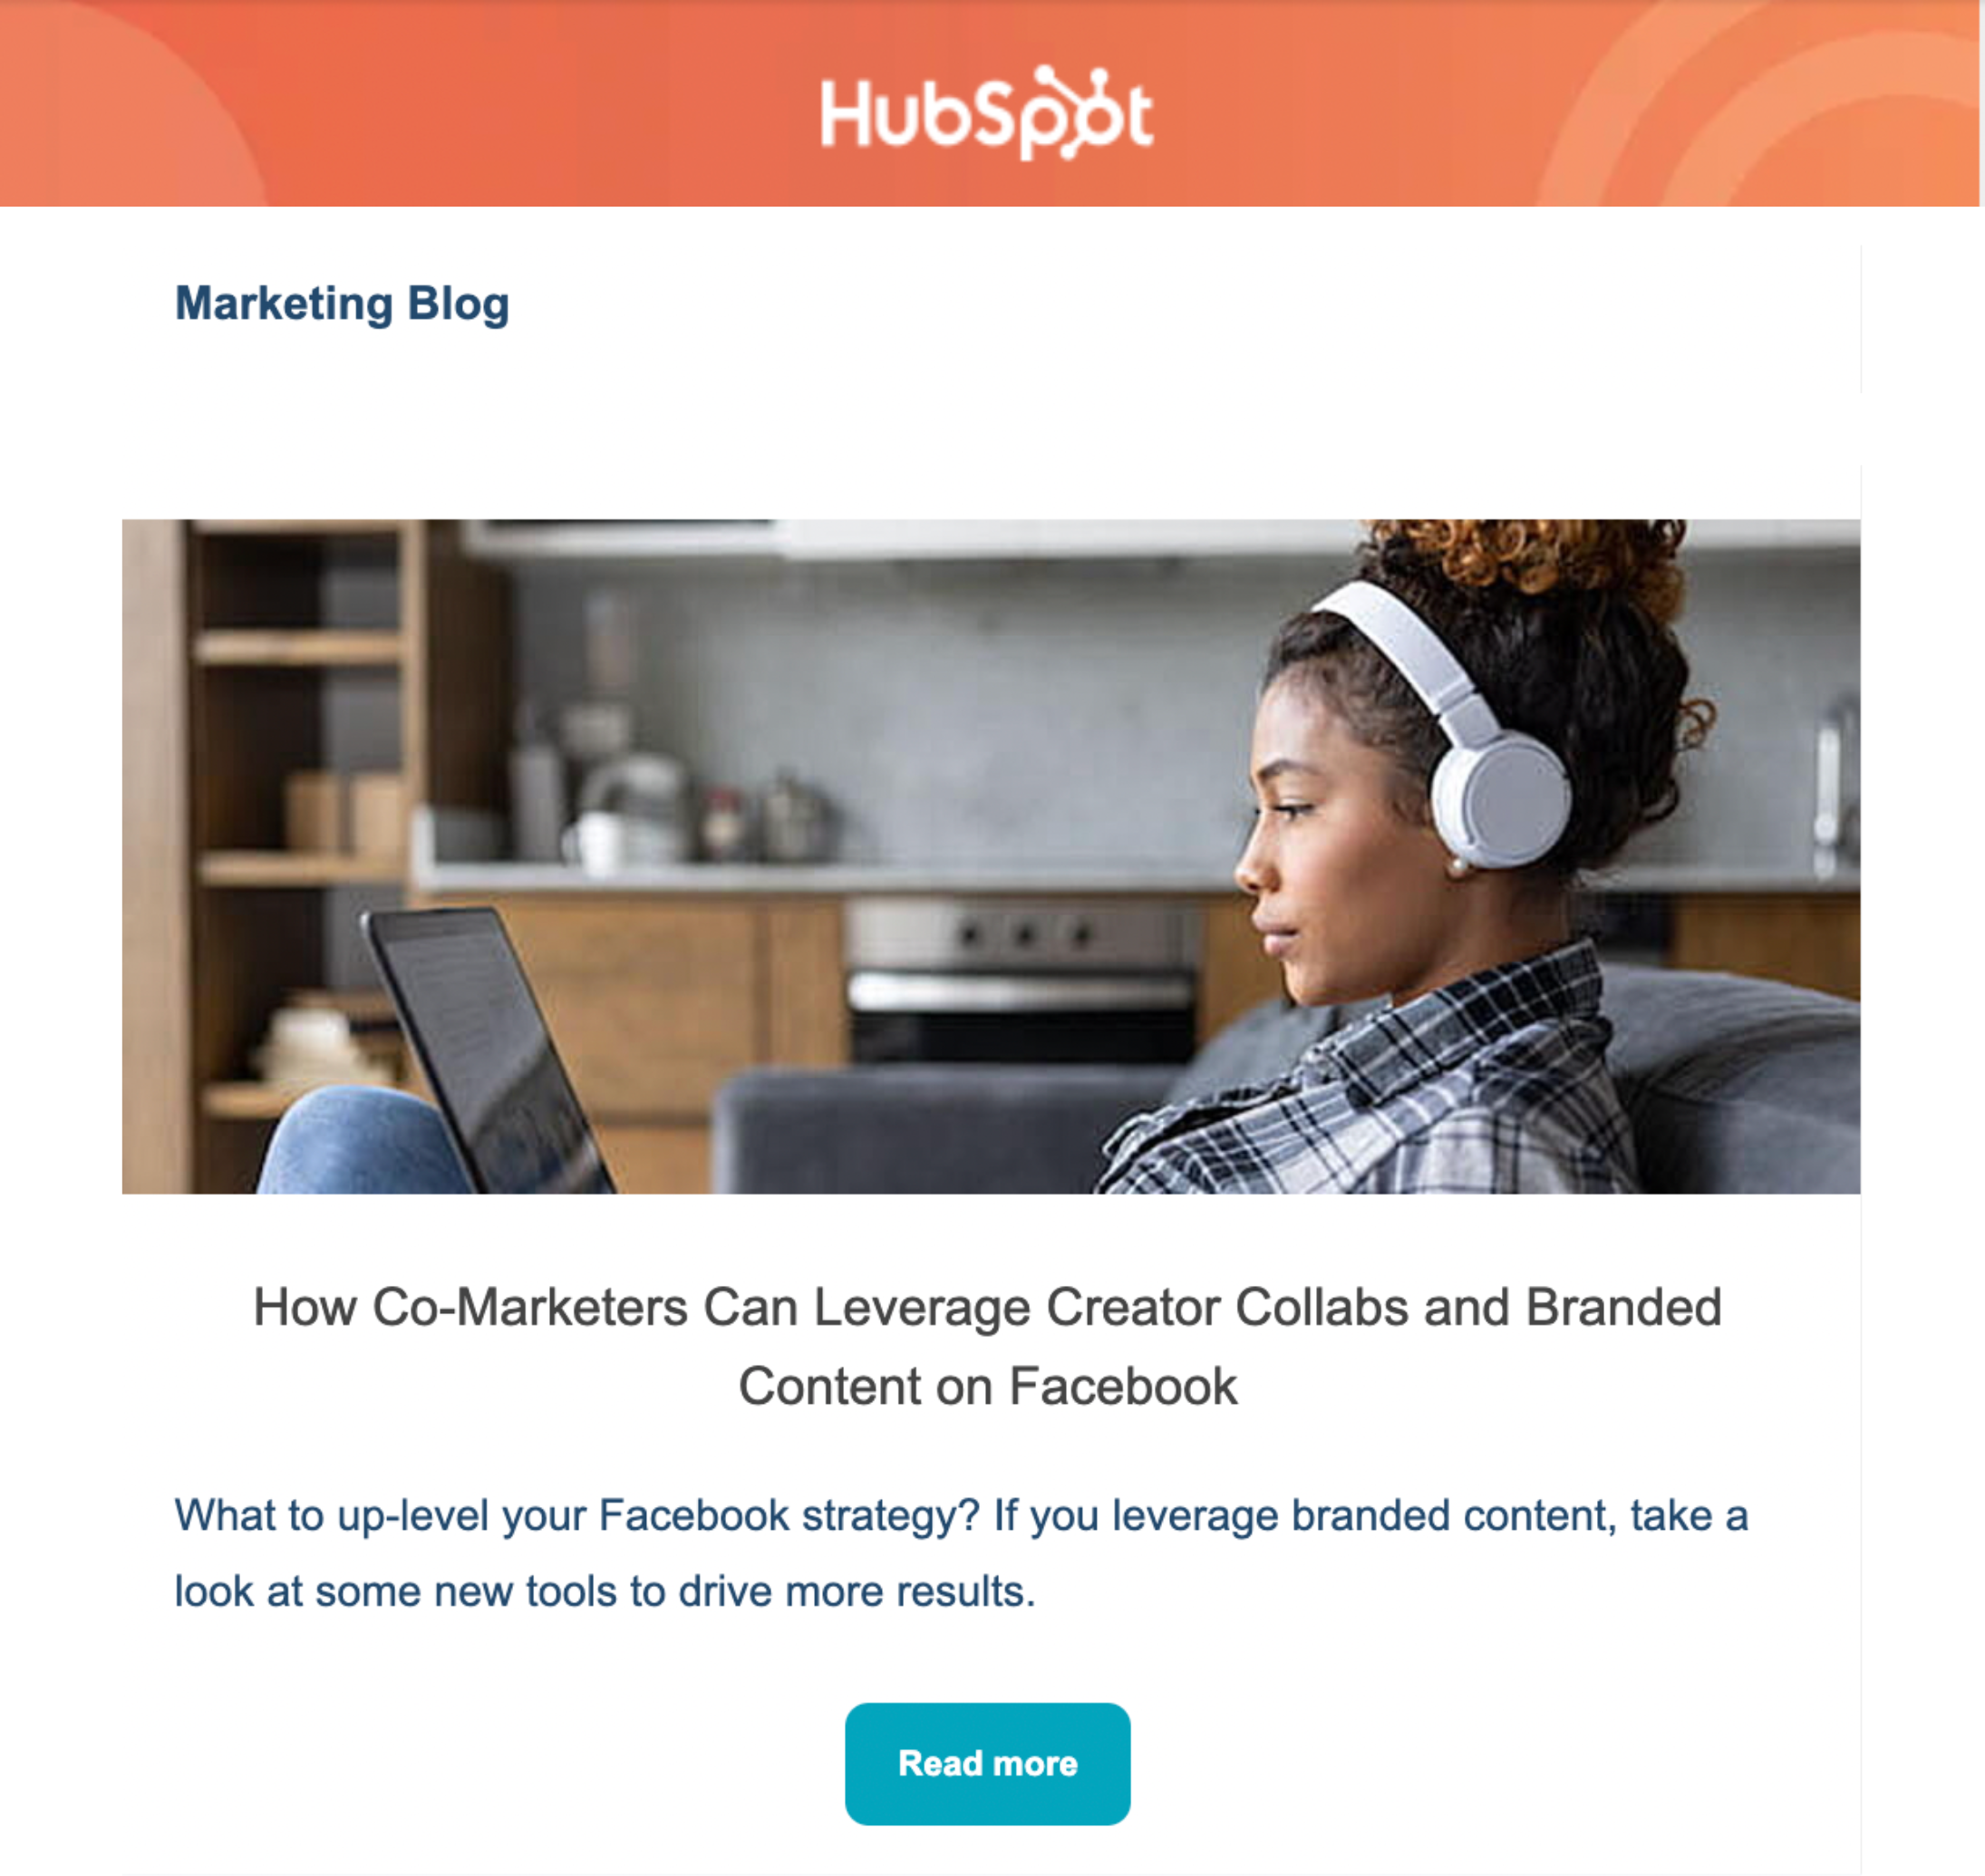 HubSpot marketing blog email newsletter screenshot